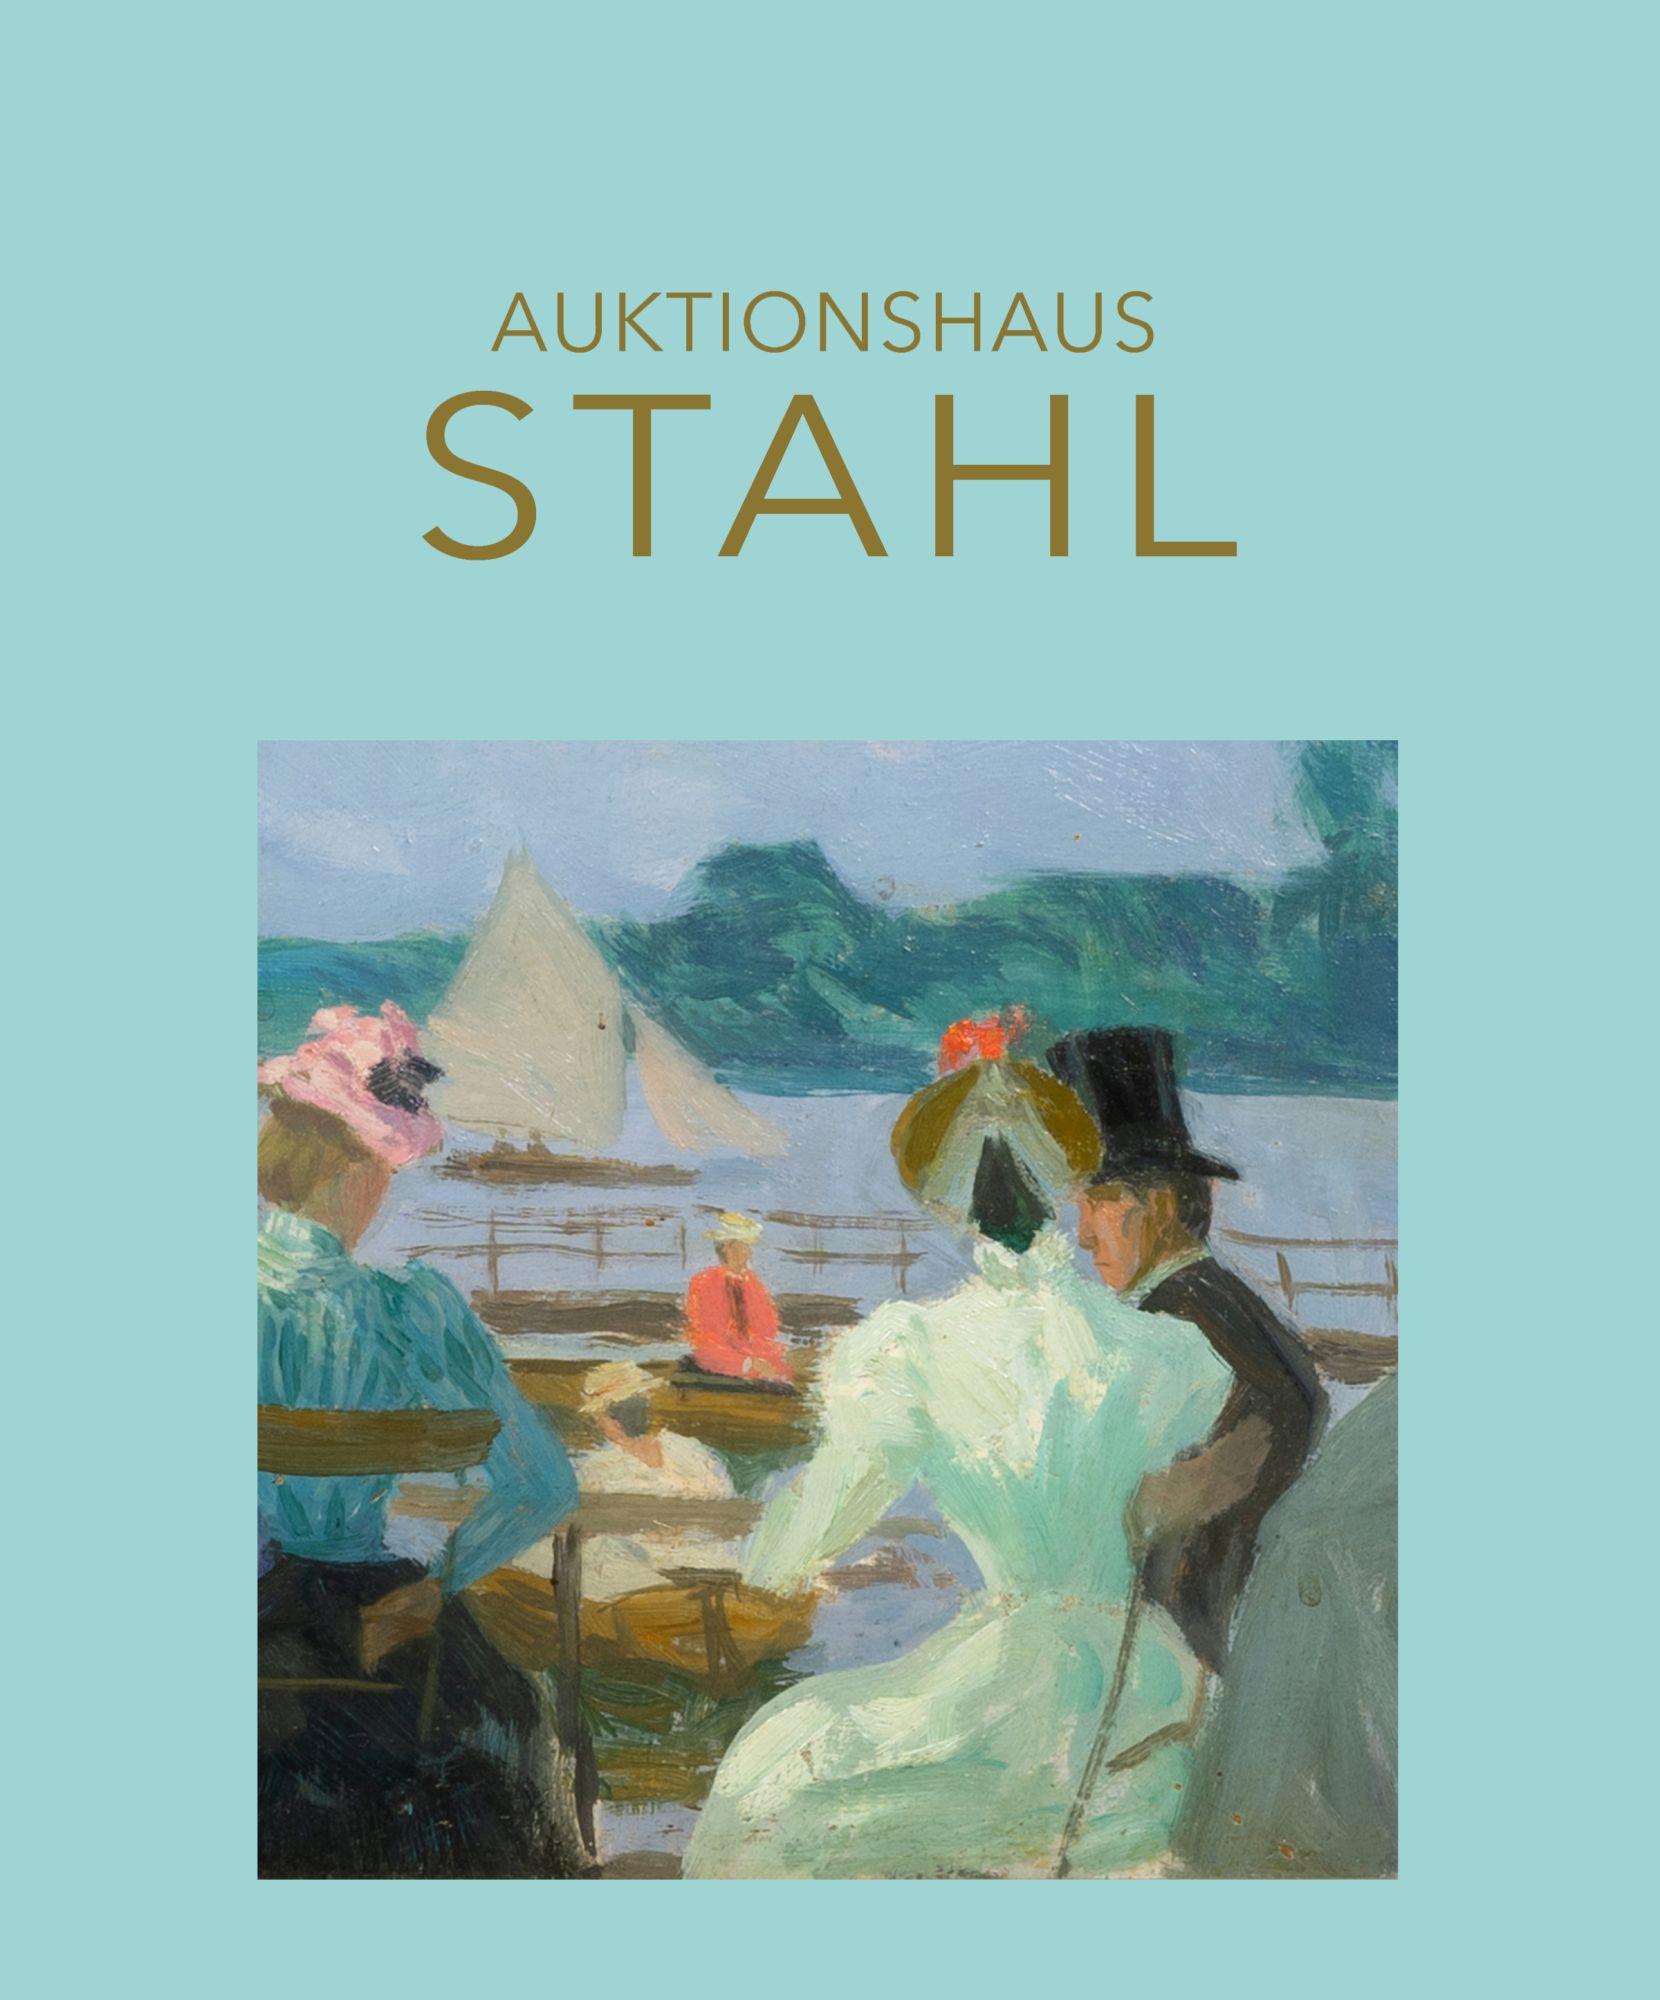 Auktionshaus Stahl in Hamburg: Kunstauktionen seit 1978